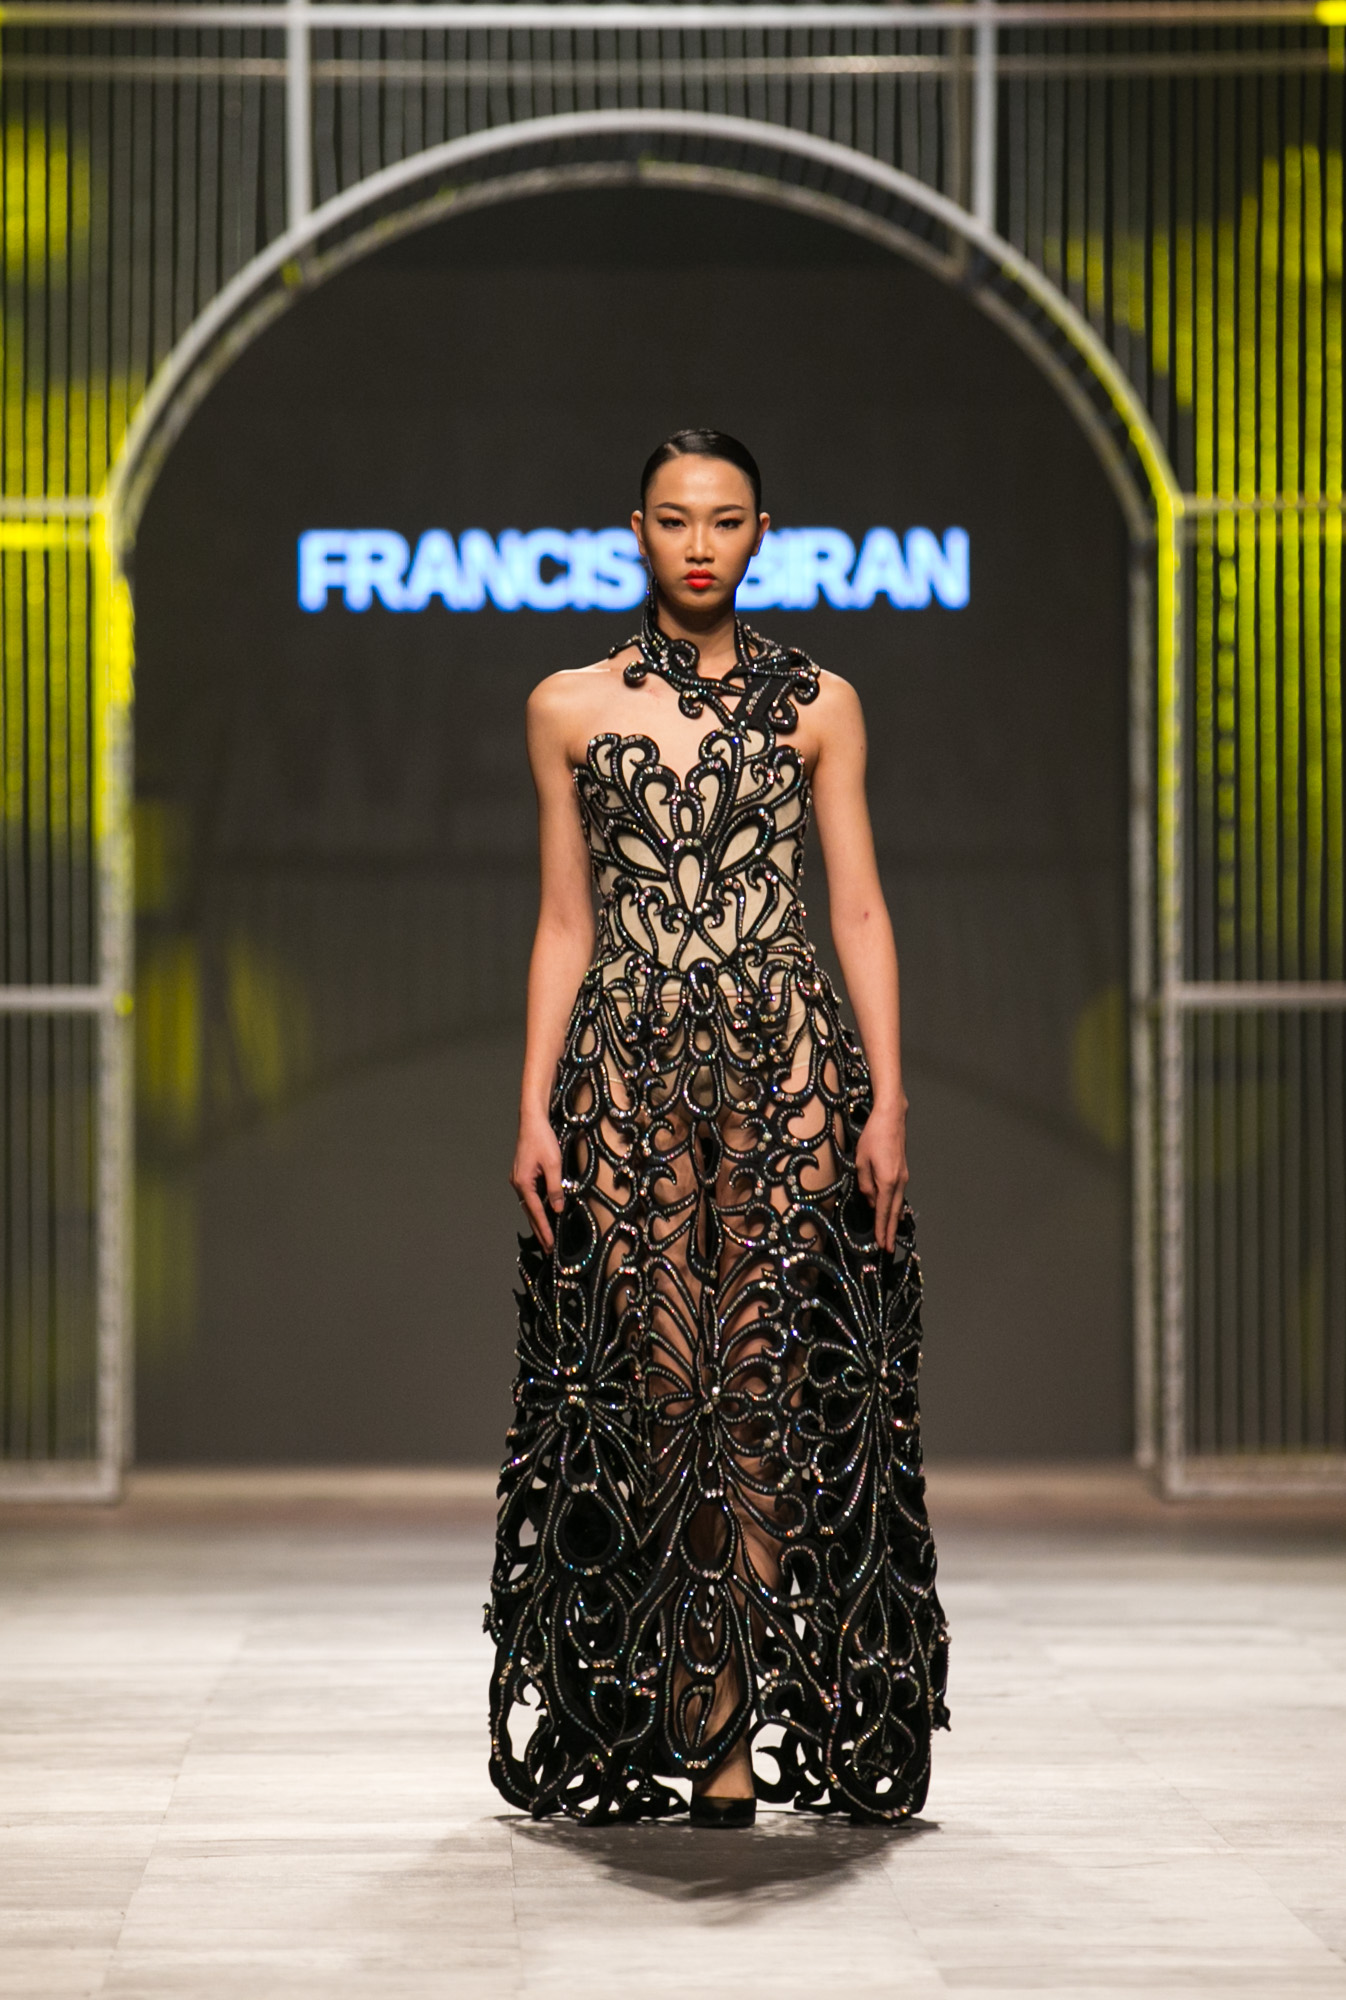 Lần đầu tiên đến với chương trình Vietnam International Fashion Week, nhưng có thể nói NTK người Philippines Francis Libiran đã chiêu đãi những tín đồ thời trang cùng giới mộ điệu Việt bữa tiệc thời trang đặc sắc mang những âm hưởng cổ điển ngây ngất